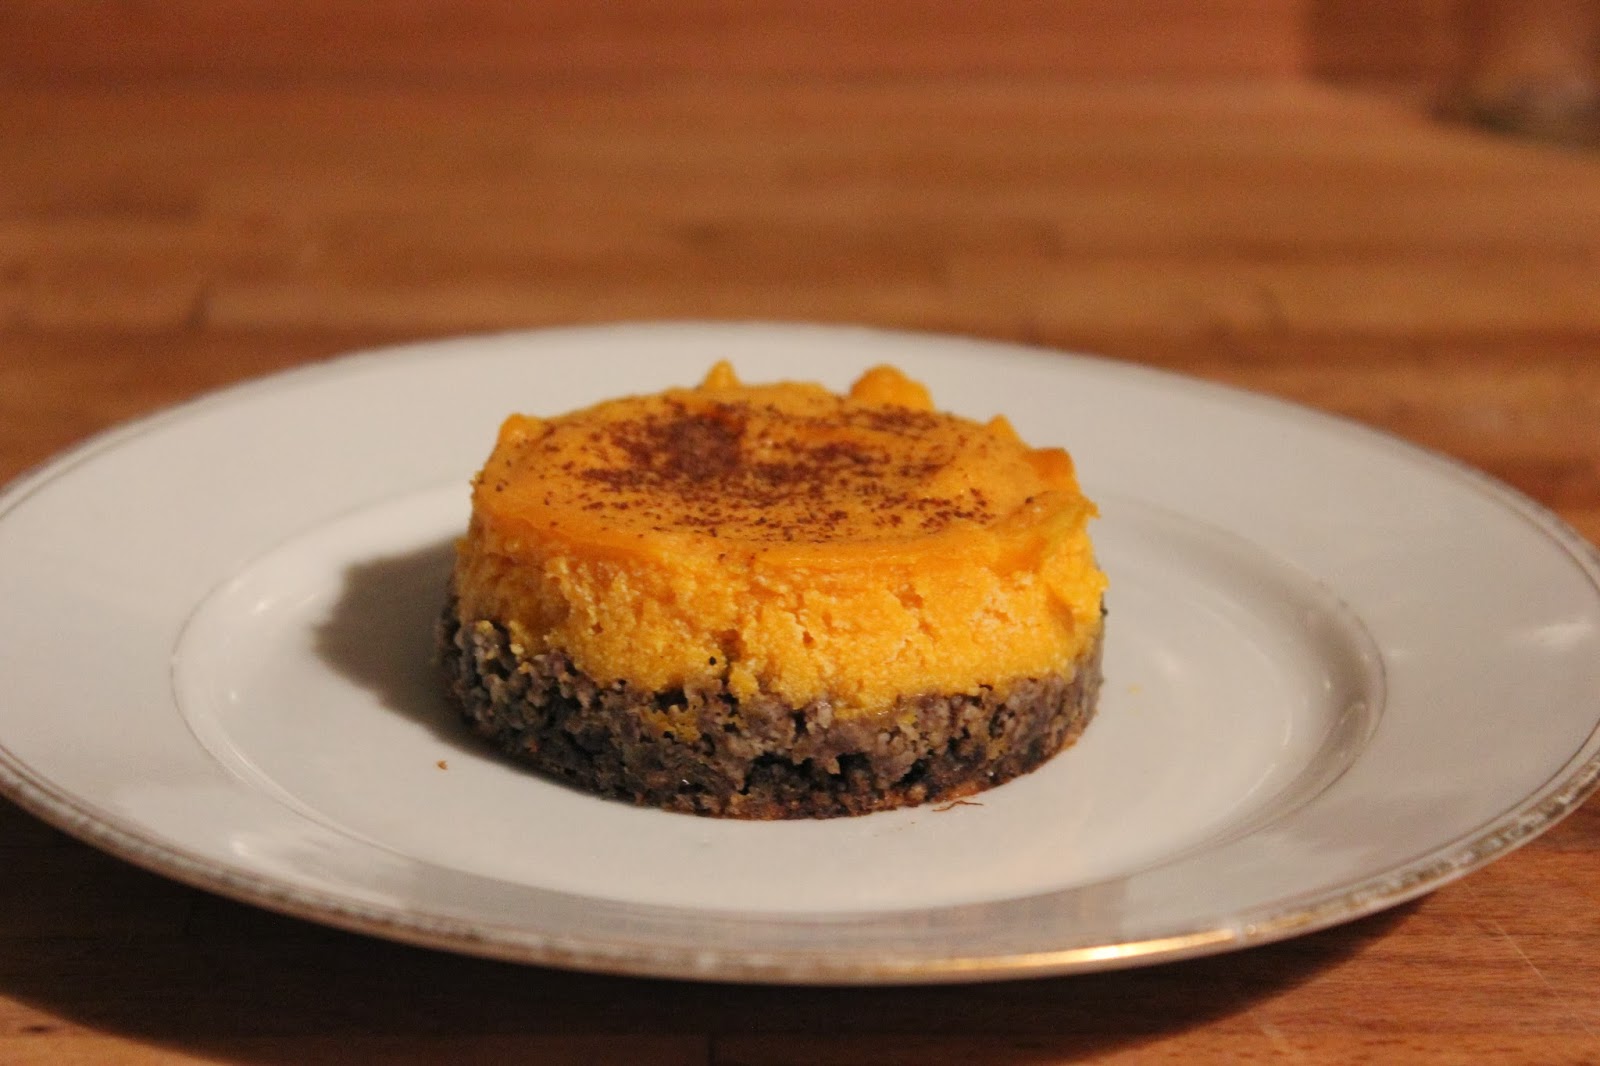 https://cuillereetsaladier.blogspot.com/2013/10/cheesecake-butternut-caroube.html